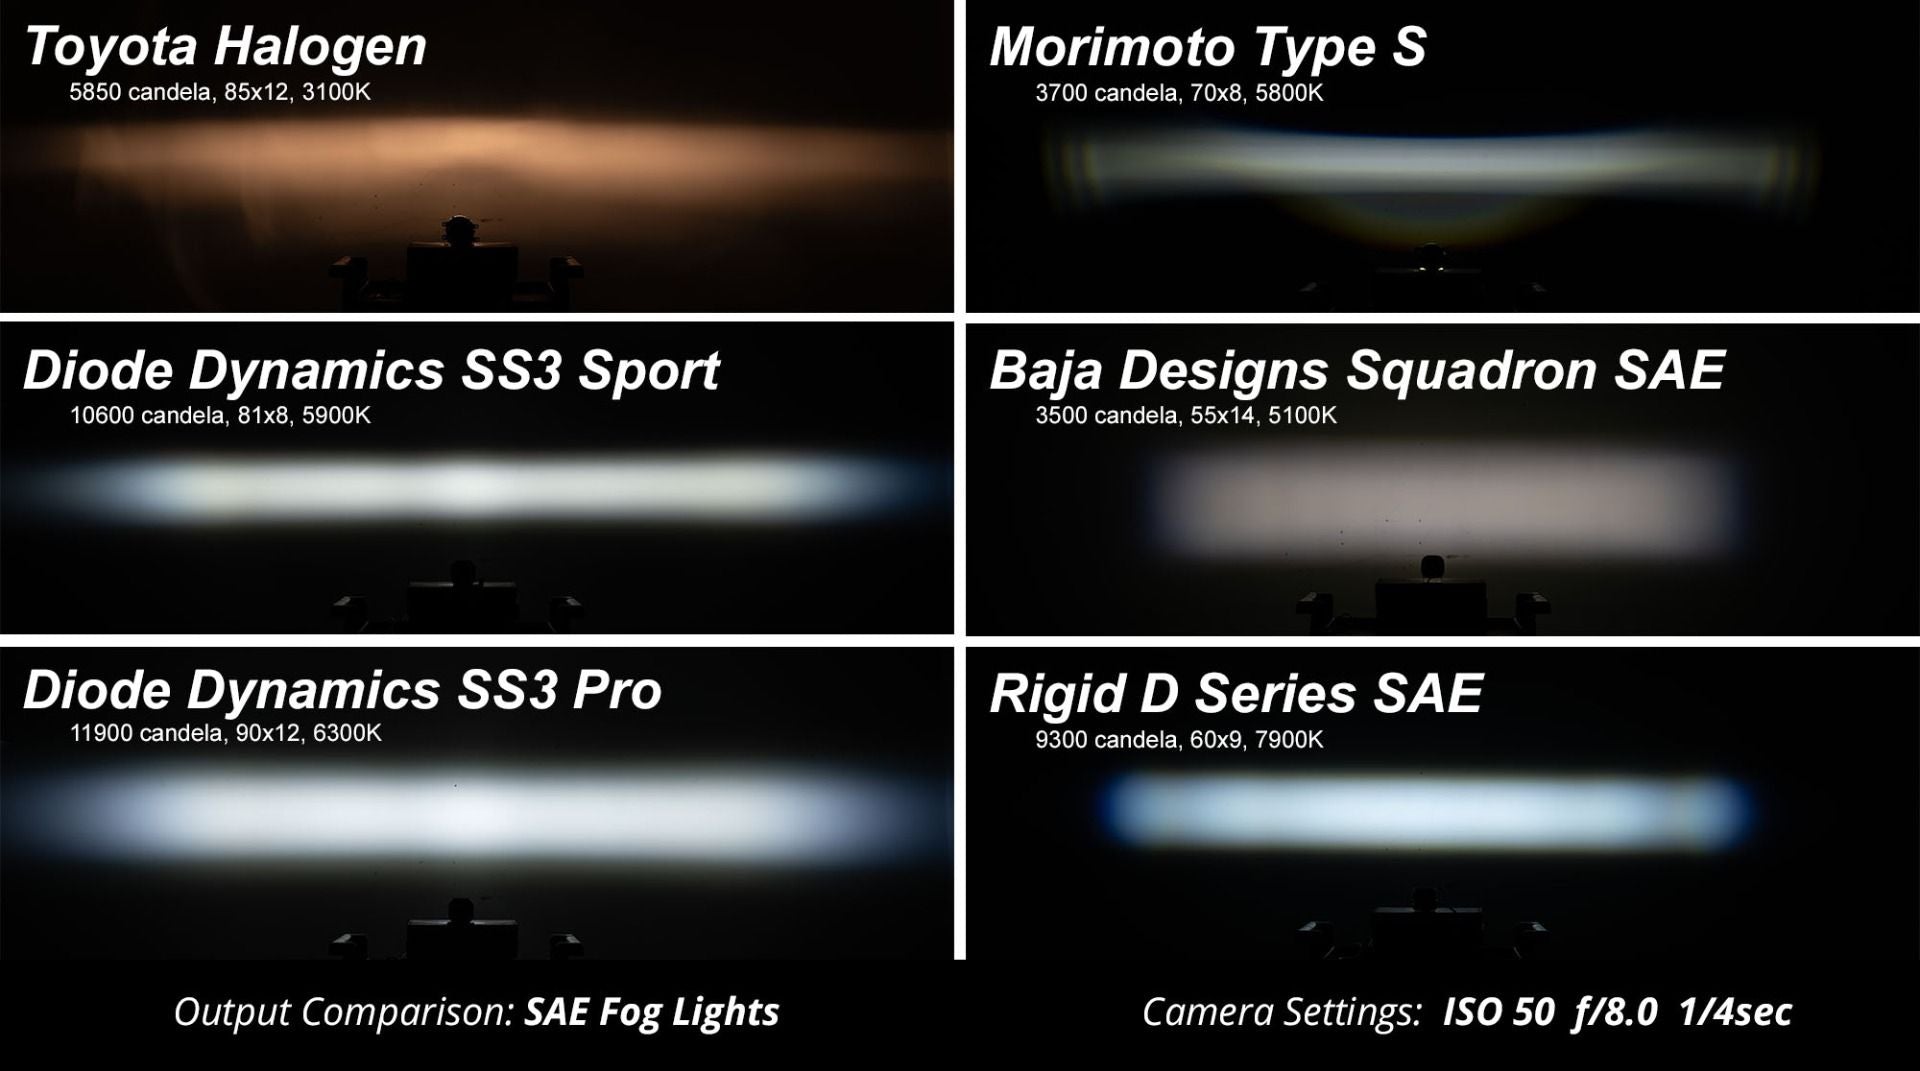 SS3 LED Fog Light Kit For 2011-2013 Lexus IS250